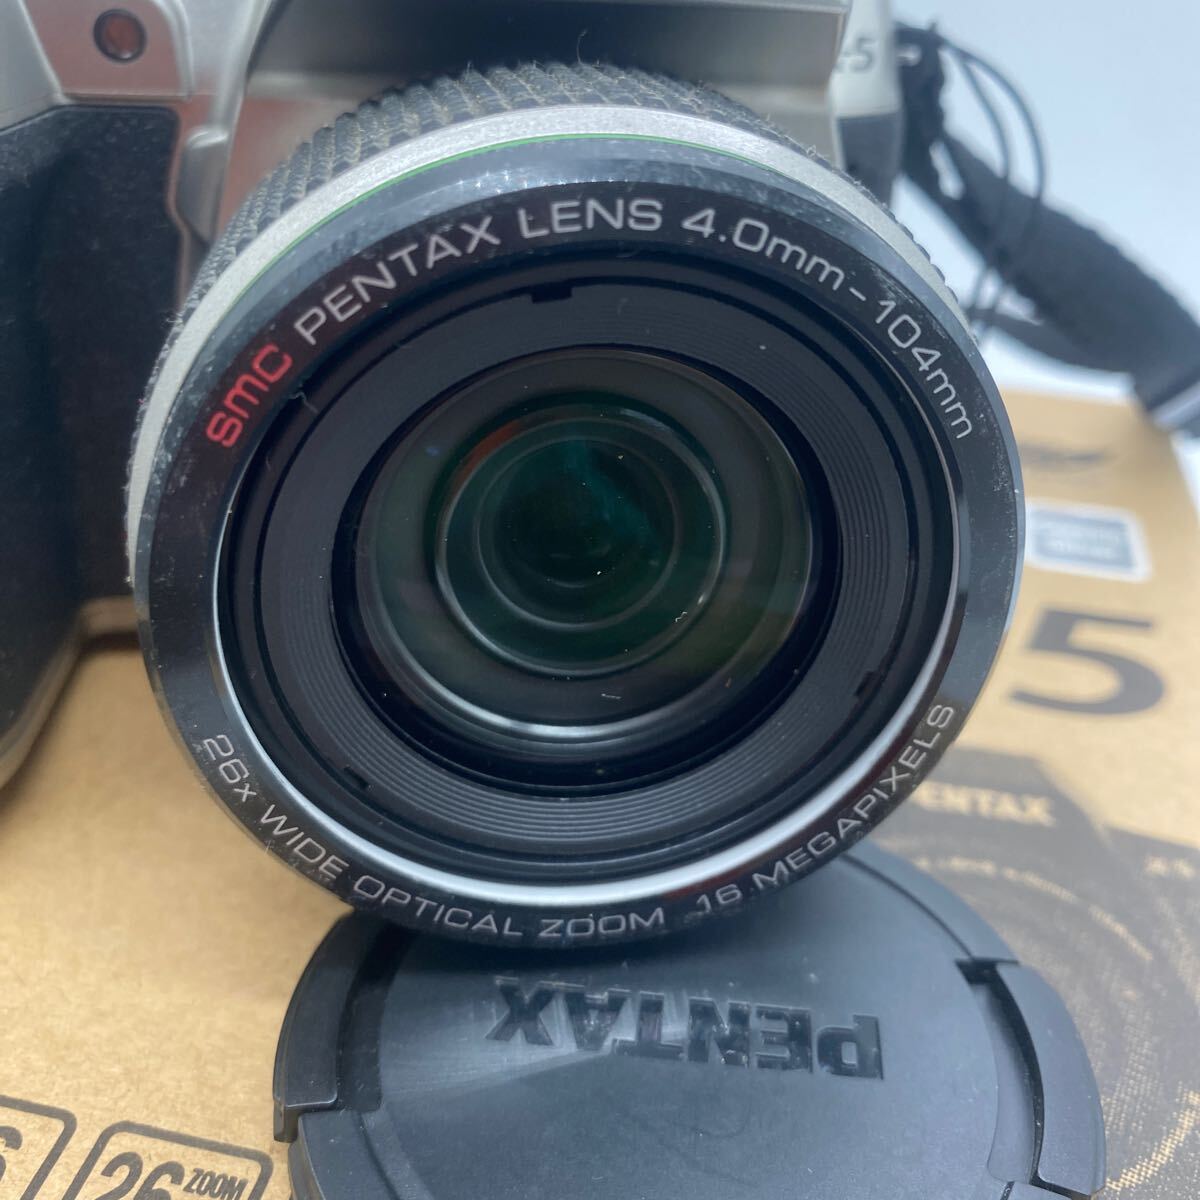 2404Y43 PENTAX X-5 Olympus цифровой однообъективный зеркальный камера цифровая камера с коробкой текущее состояние товар 